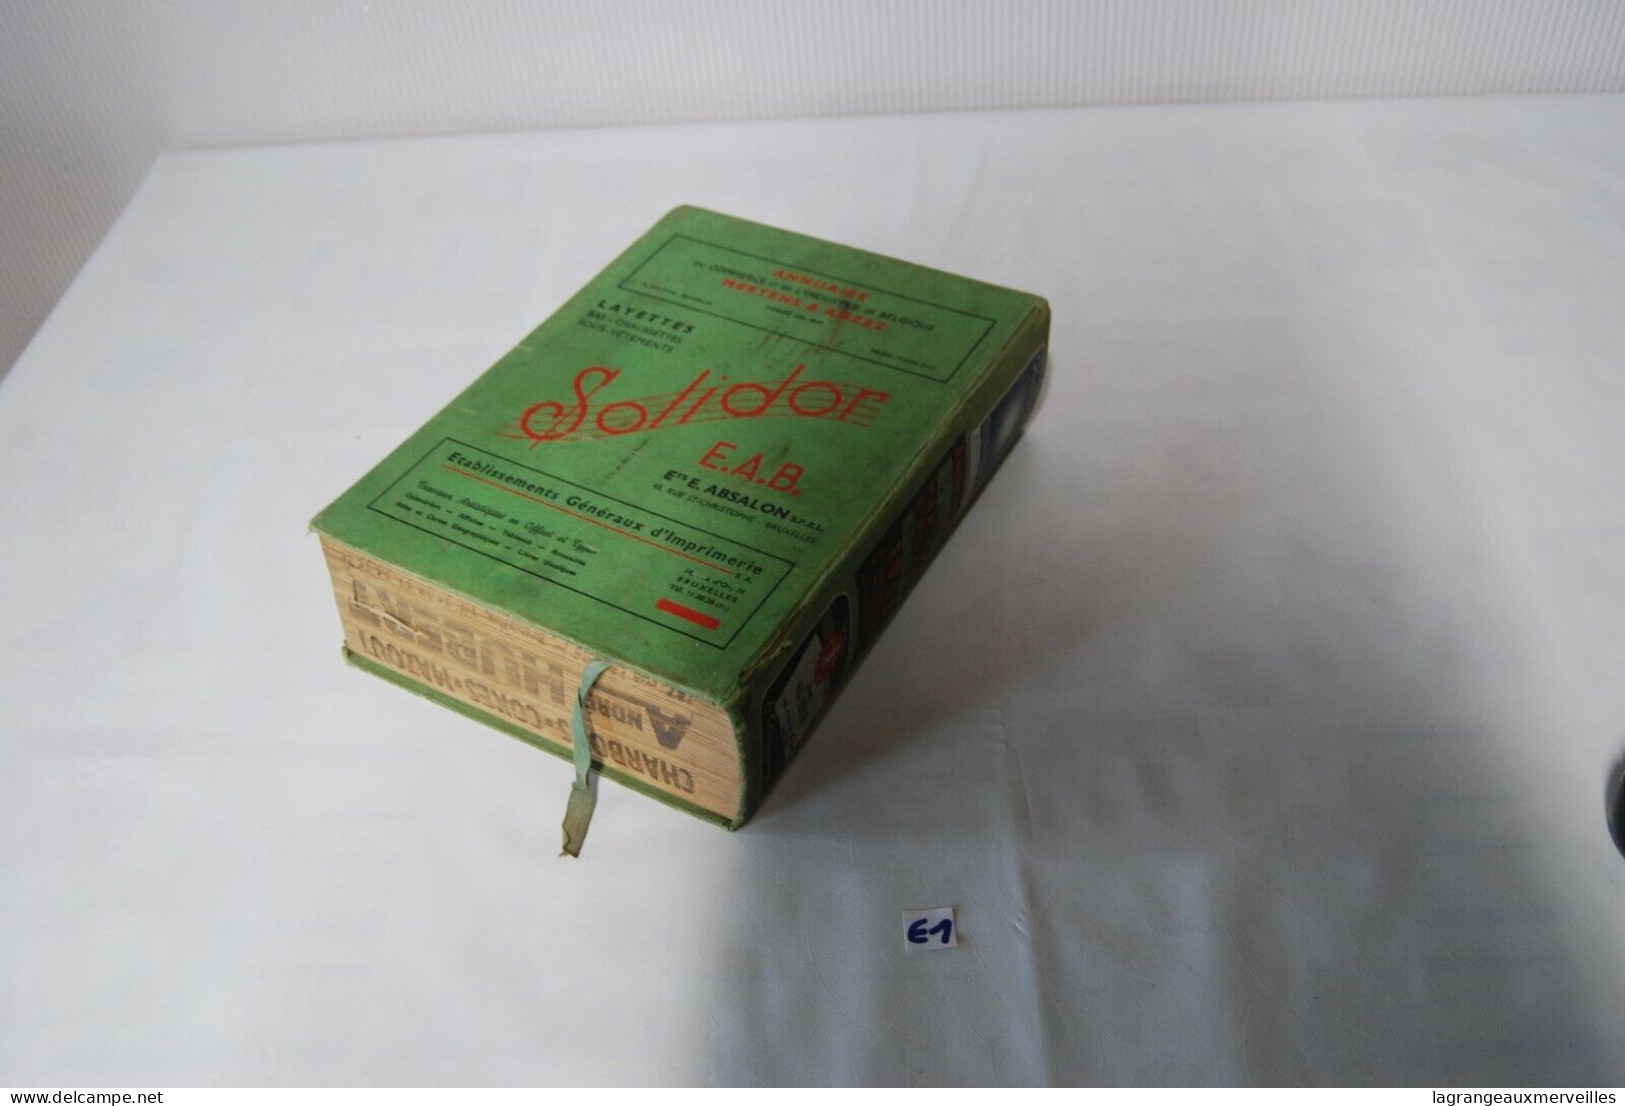 E1 Rare ancien annuaire téléphonique - 1950 - papier coke charbon publicitaire